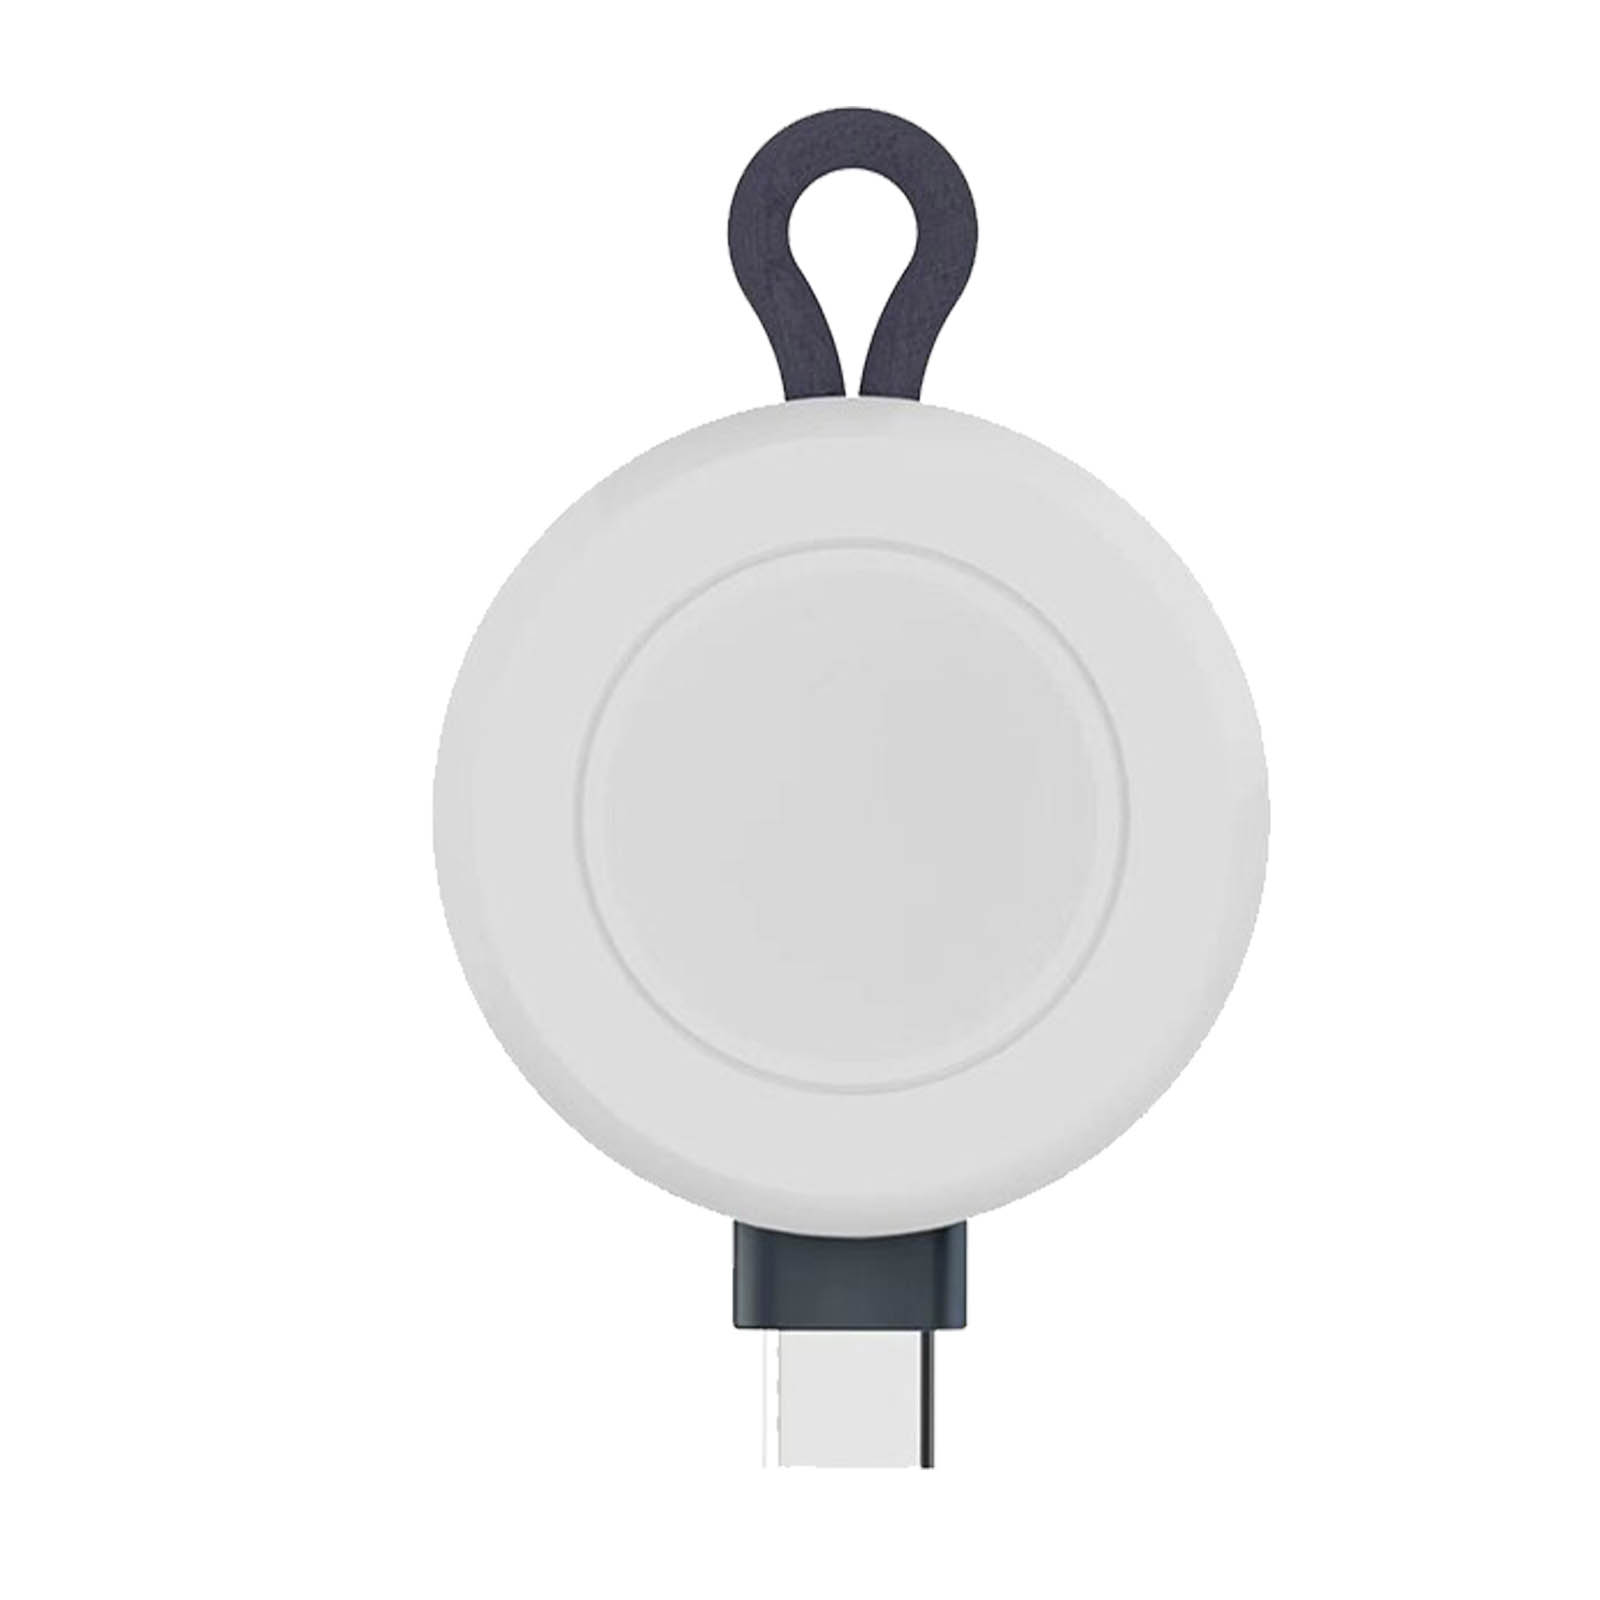 Charger AVIZAR für Ladegerät Apple, Wireless Schwarz Smartwatch